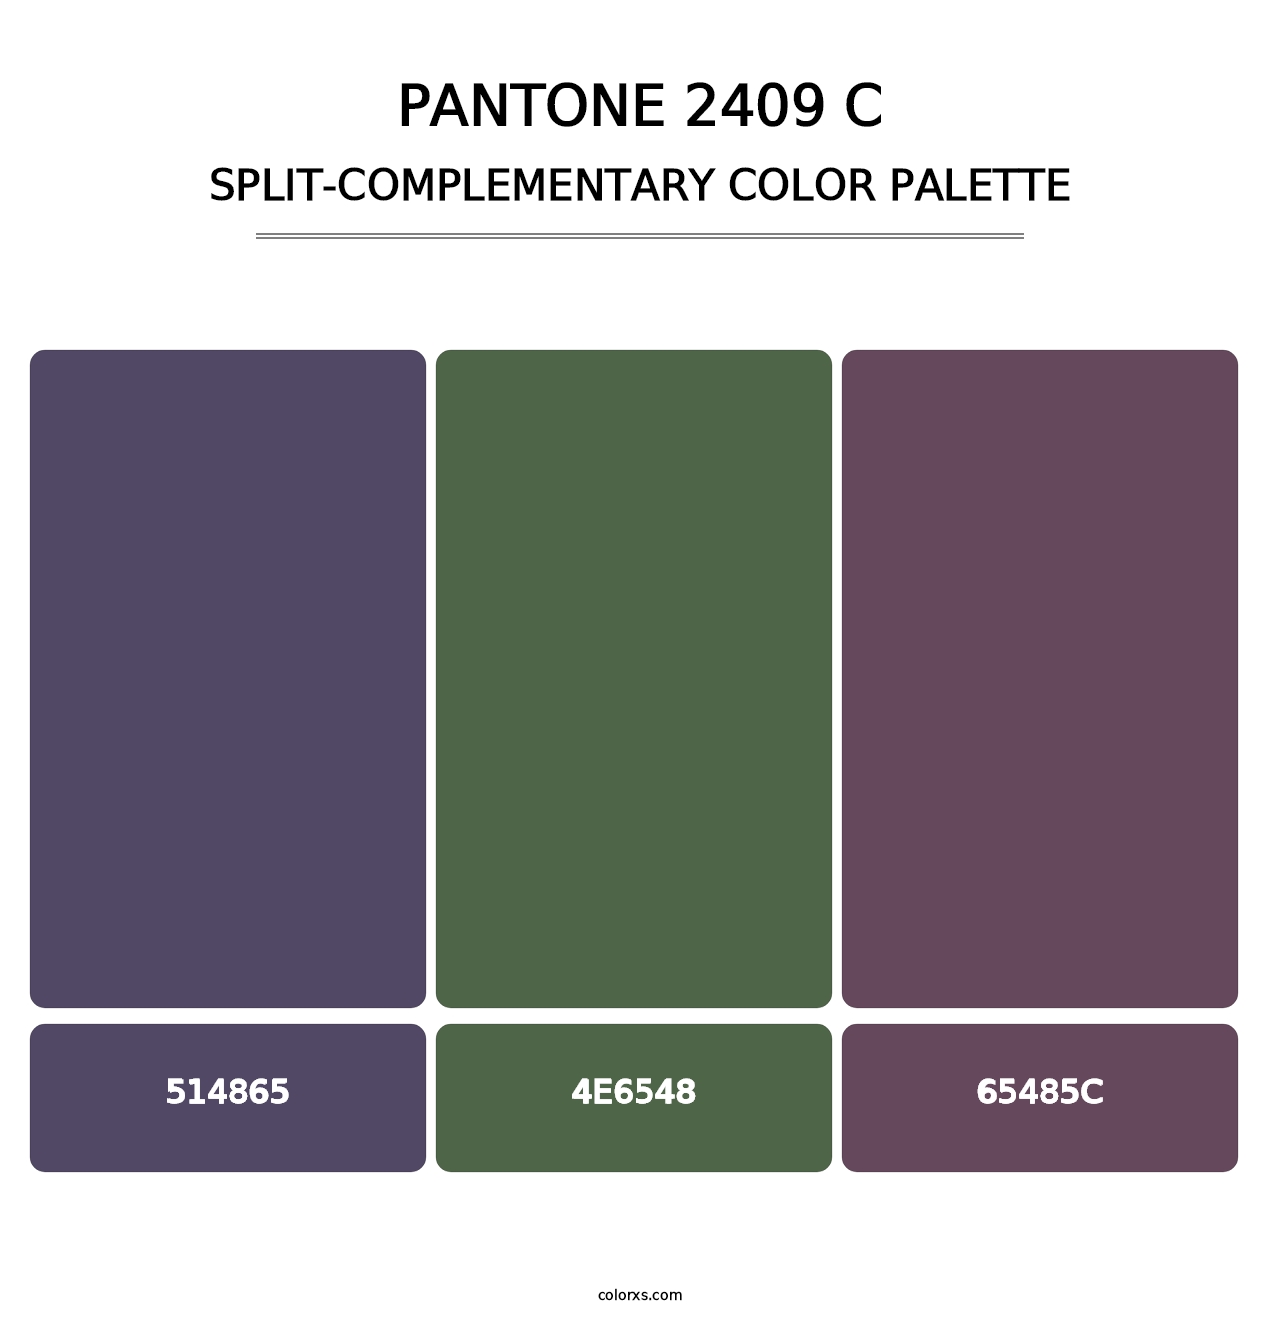 PANTONE 2409 C - Split-Complementary Color Palette